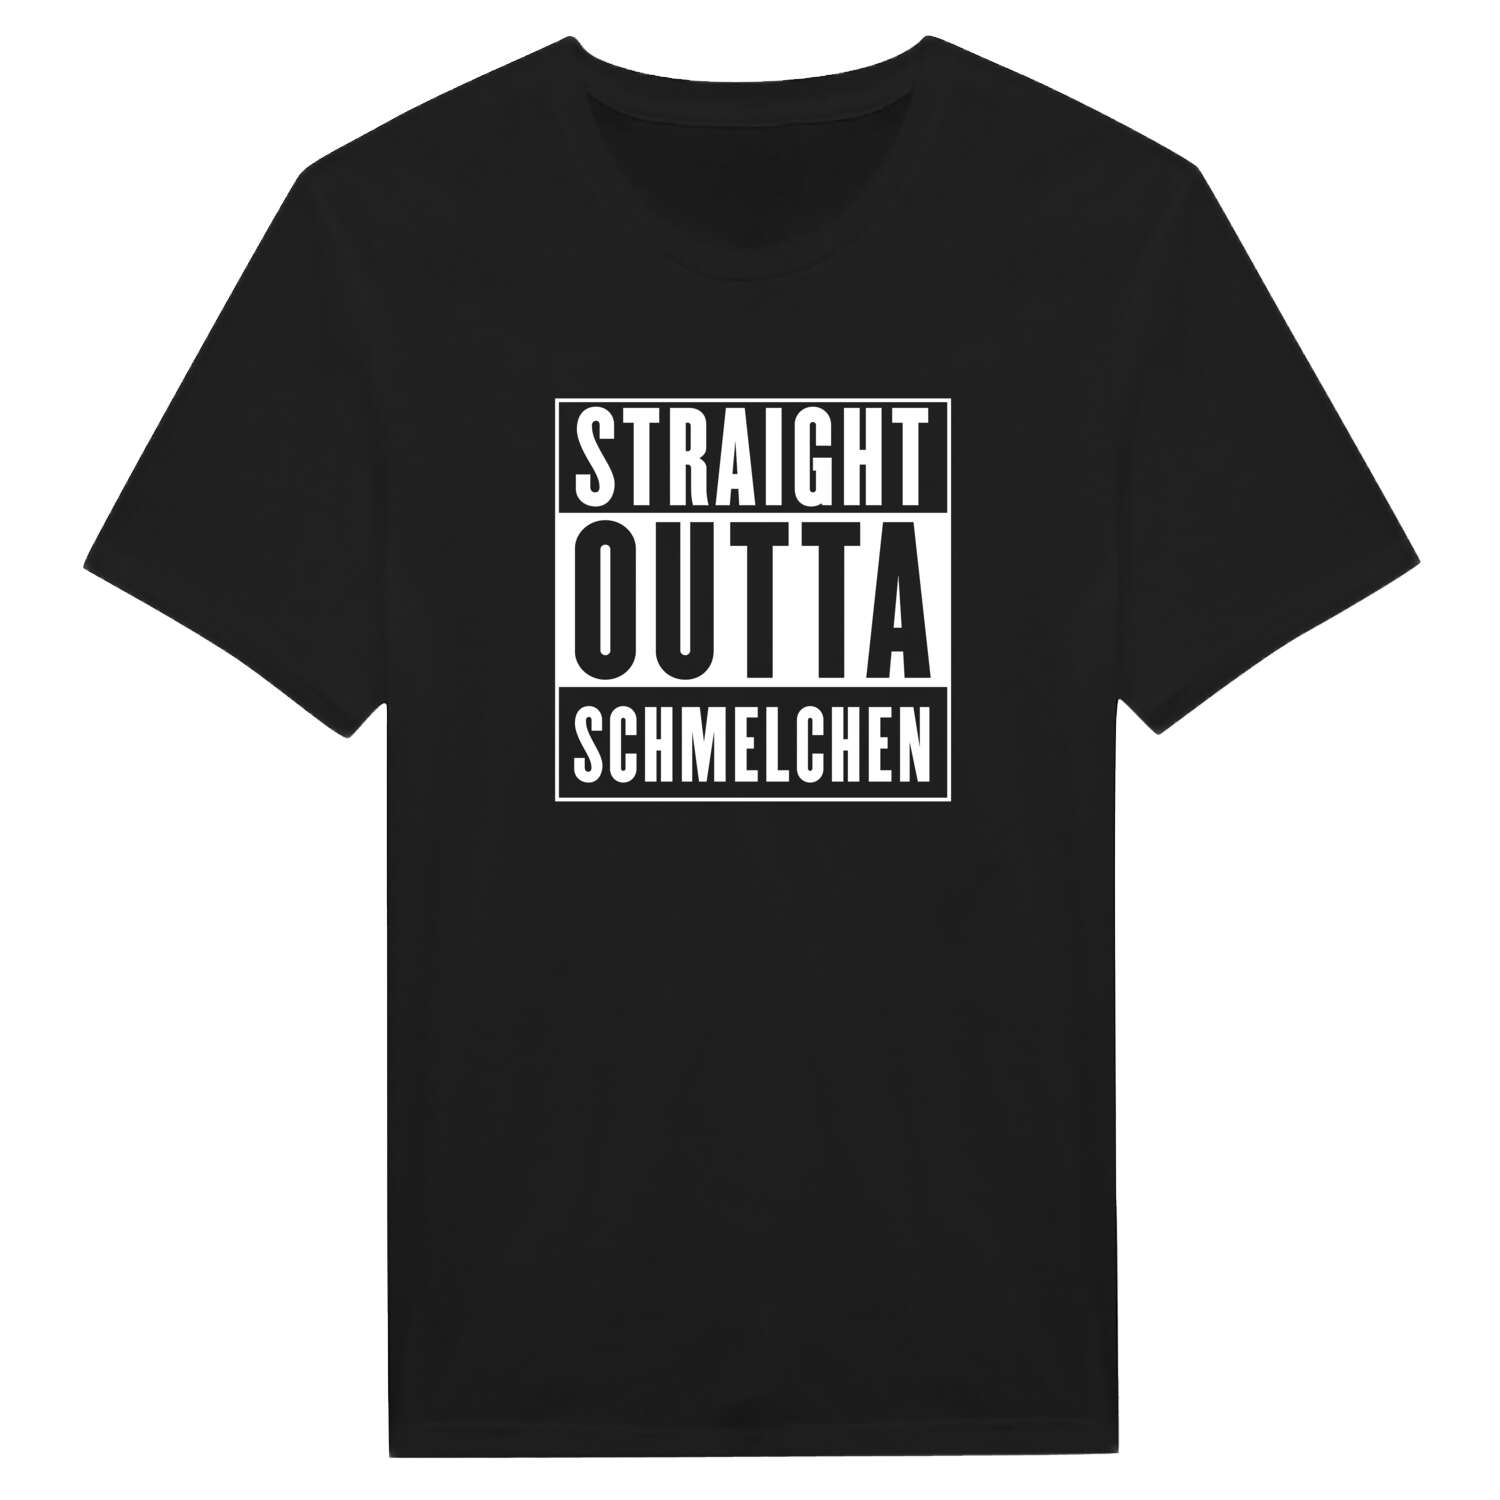 Schmelchen T-Shirt »Straight Outta«